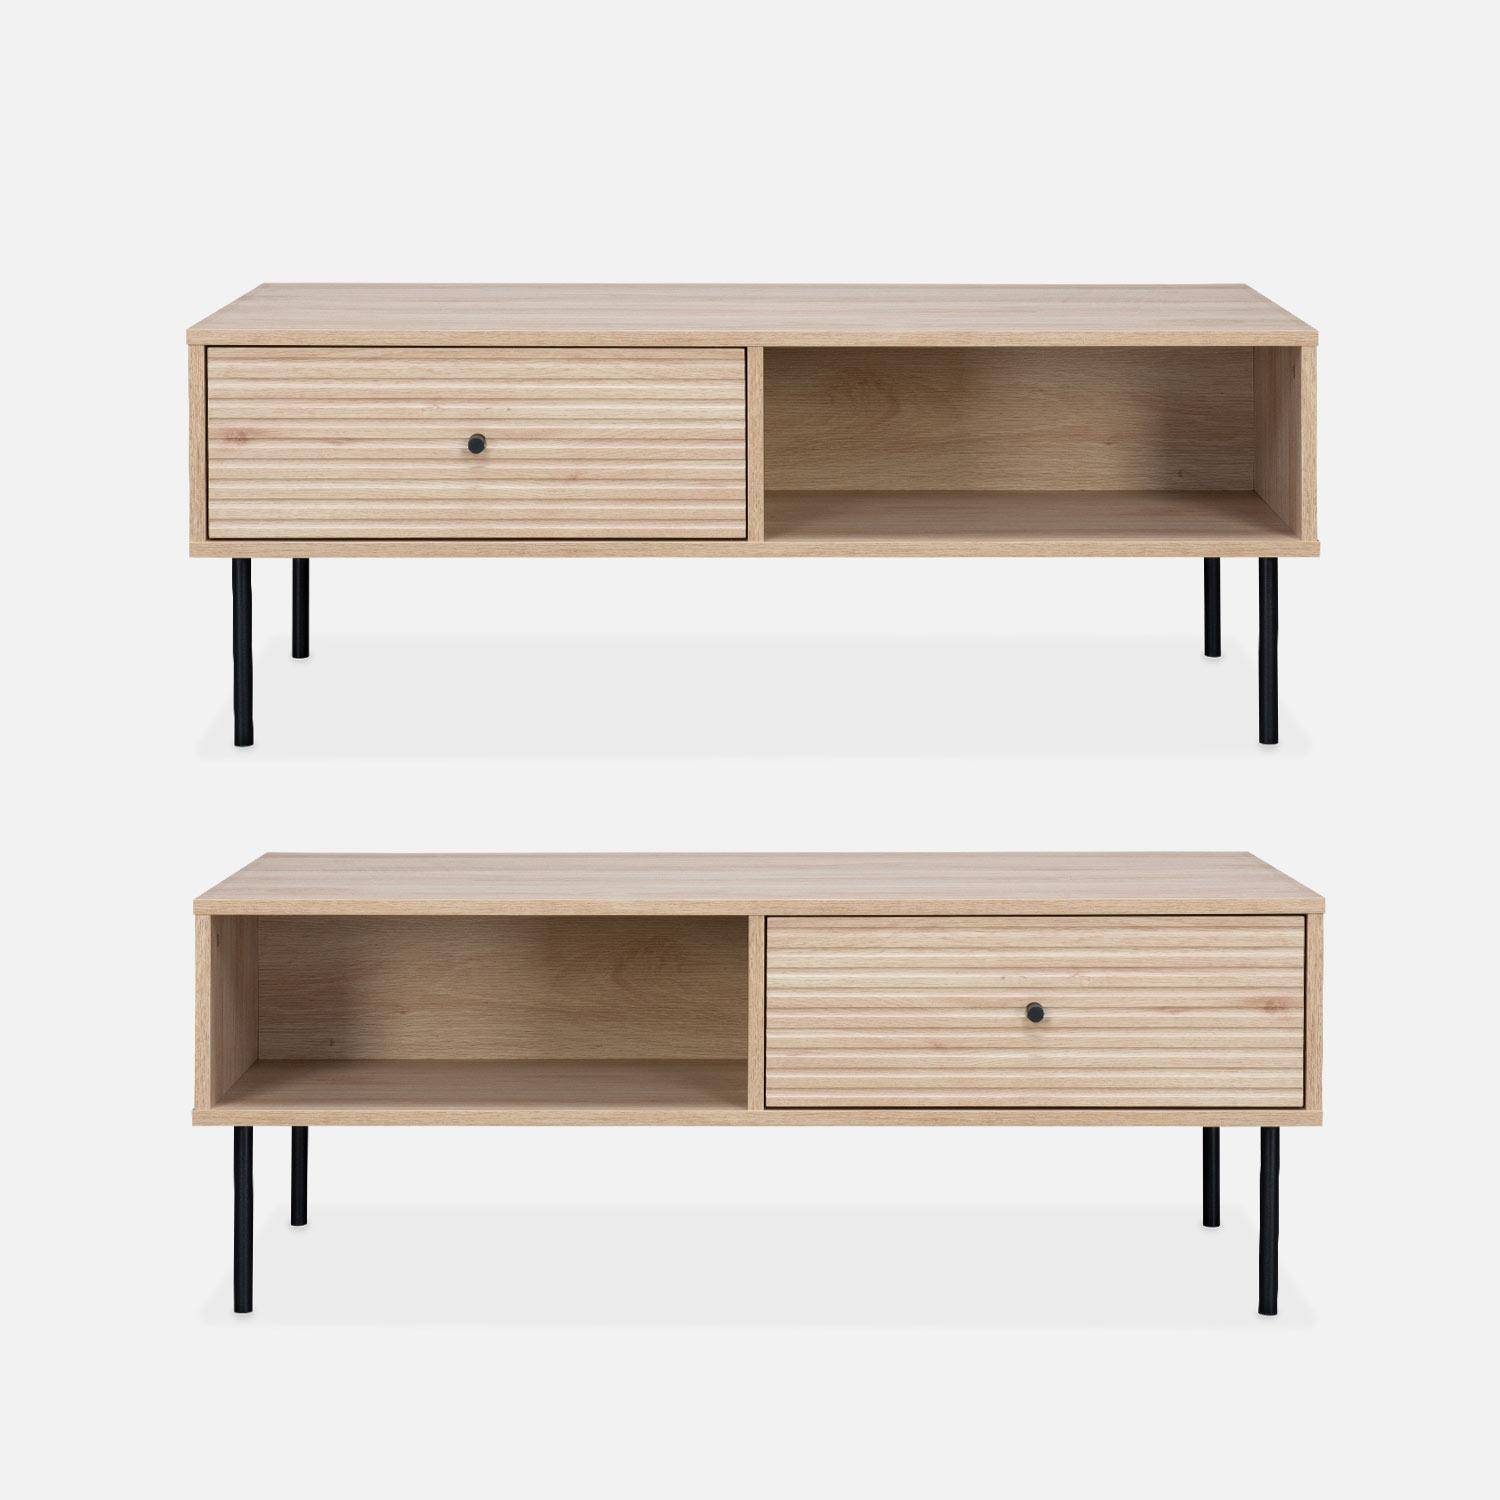 Table basse, Braga, un tiroir, deux espaces de rangement, L 110 x l 59 x H 41cm Photo4